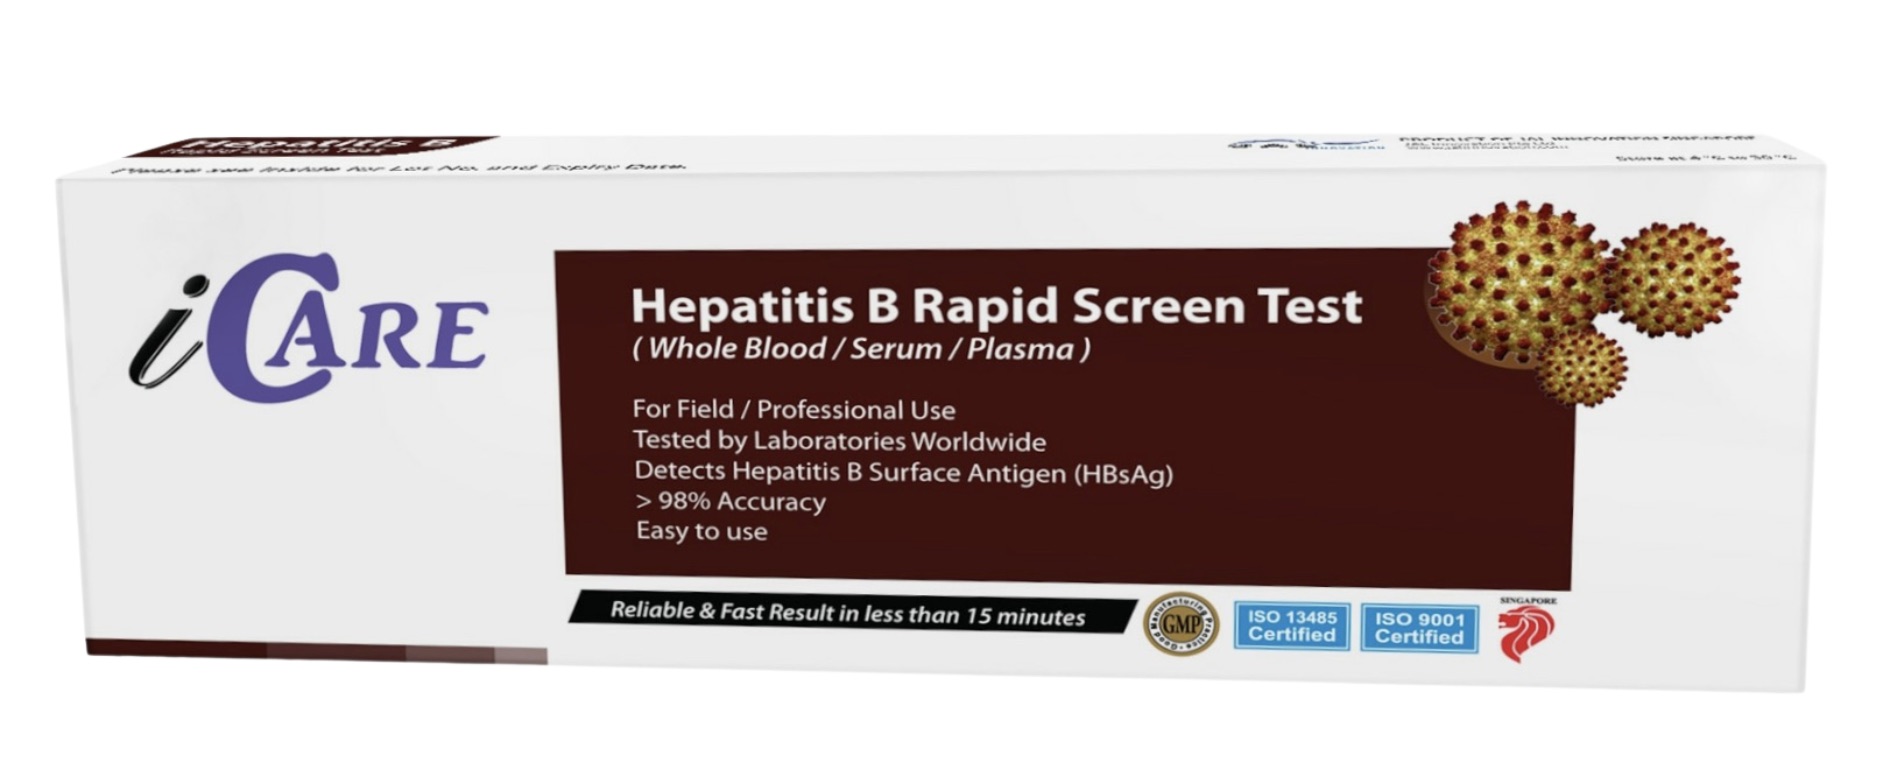 hepatitis b rapid screen test